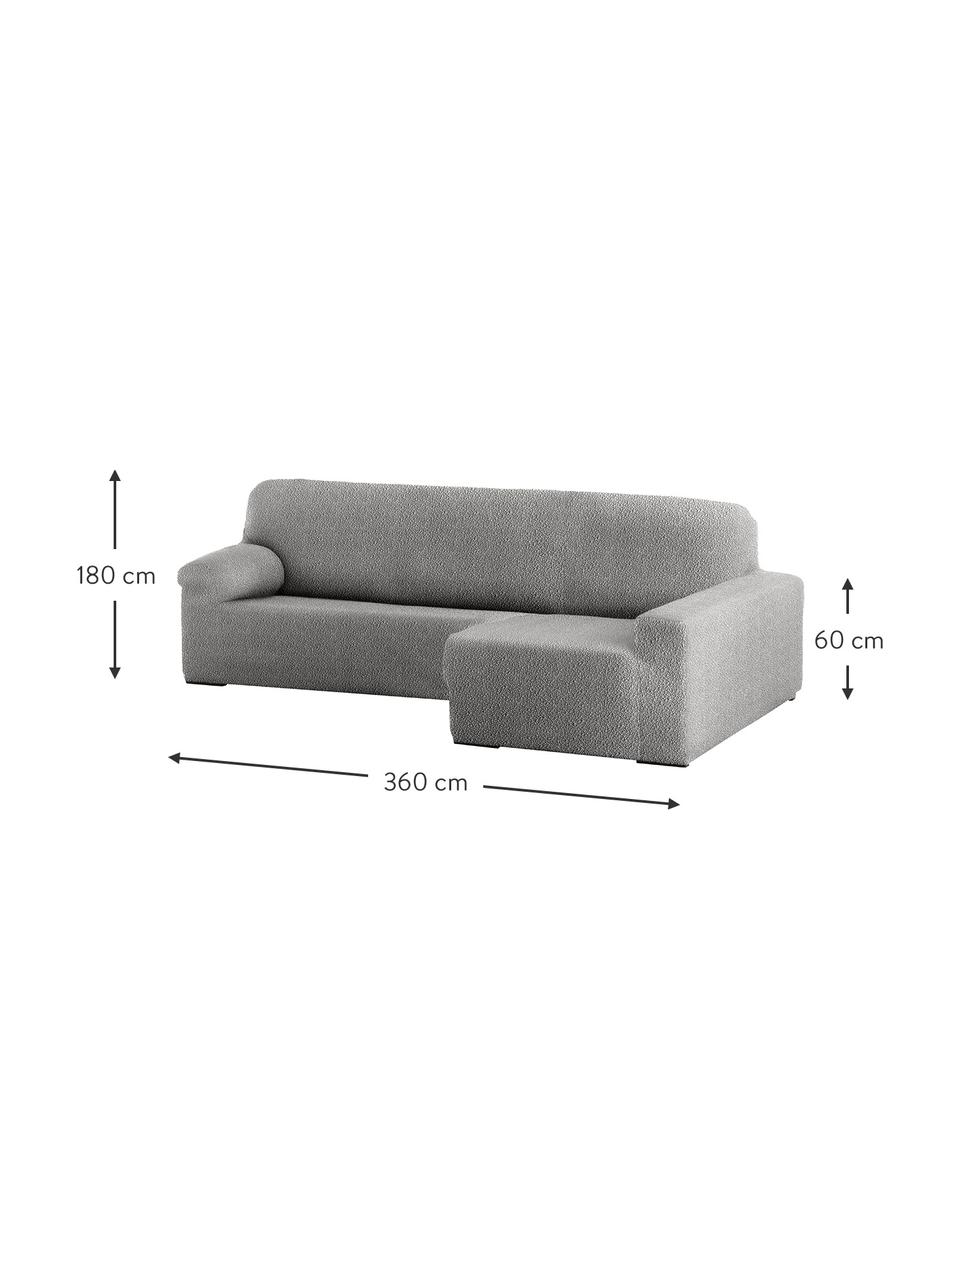 Pokrowiec na sofę narożną Roc, 55% poliester, 35% bawełna, 10% elastomer, Szary, S 360 x G 180 cm, prawostronny